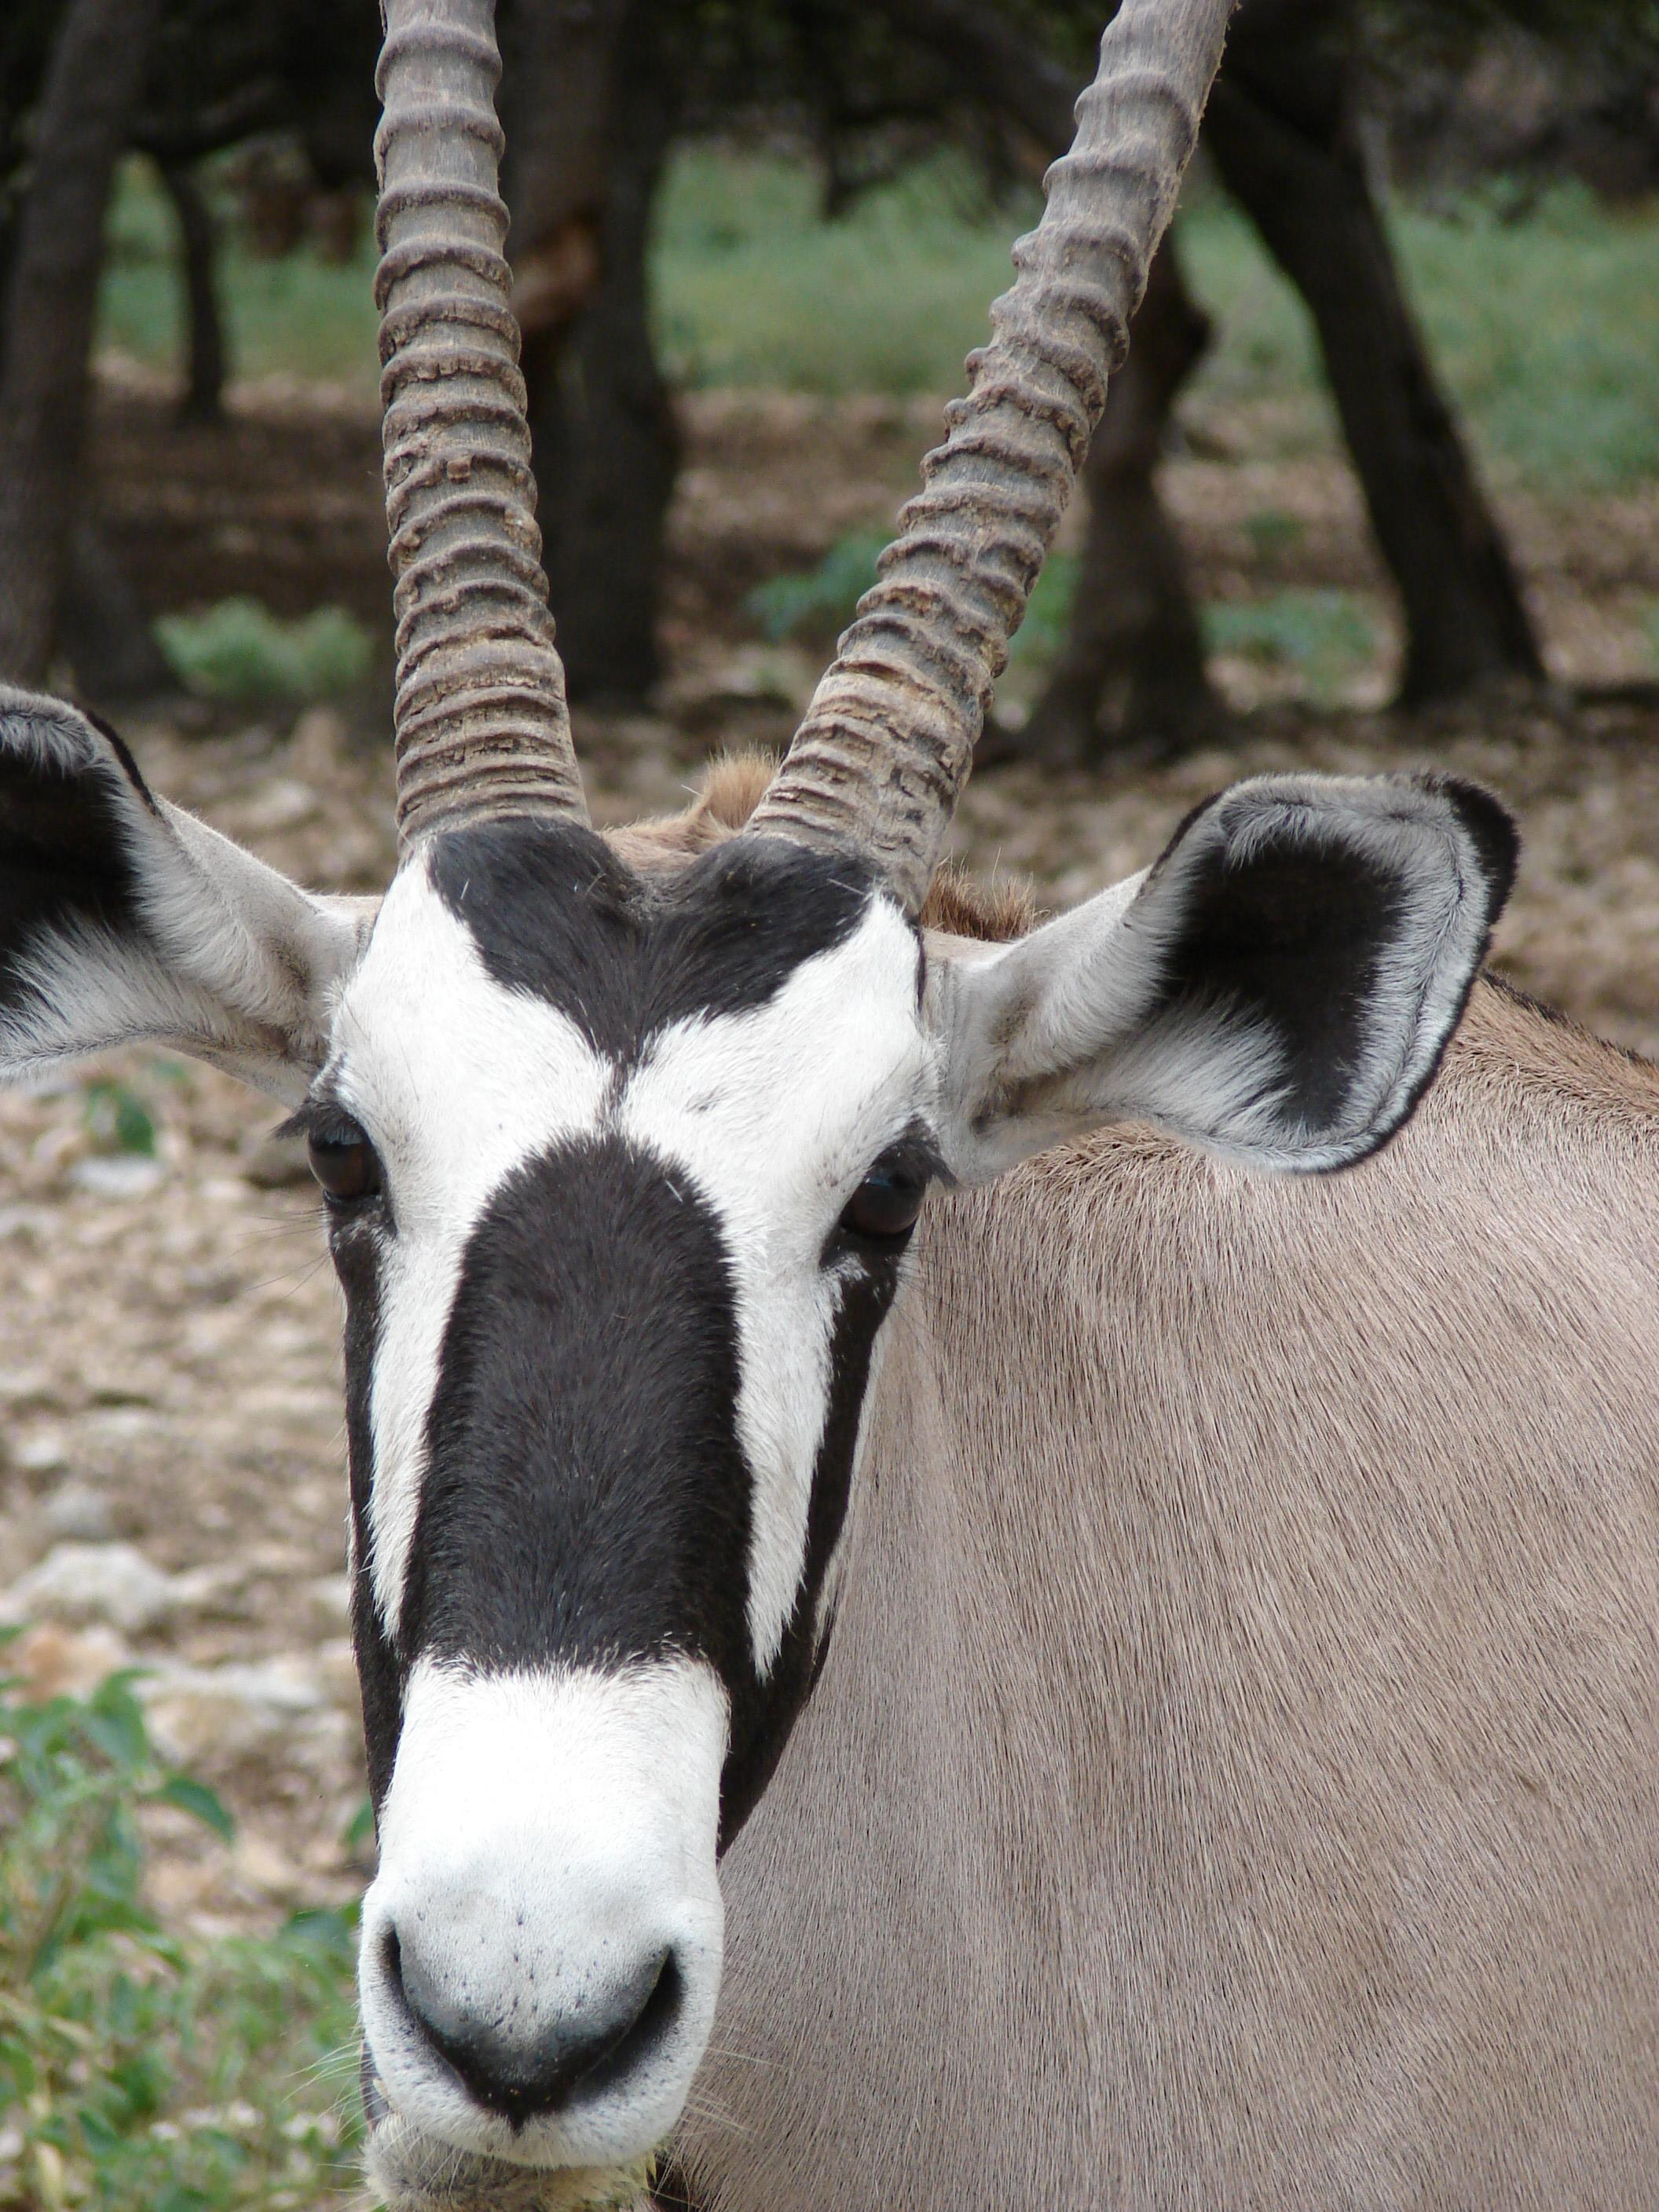 La gazelle, "un fétiche doux", selon un guérisseur